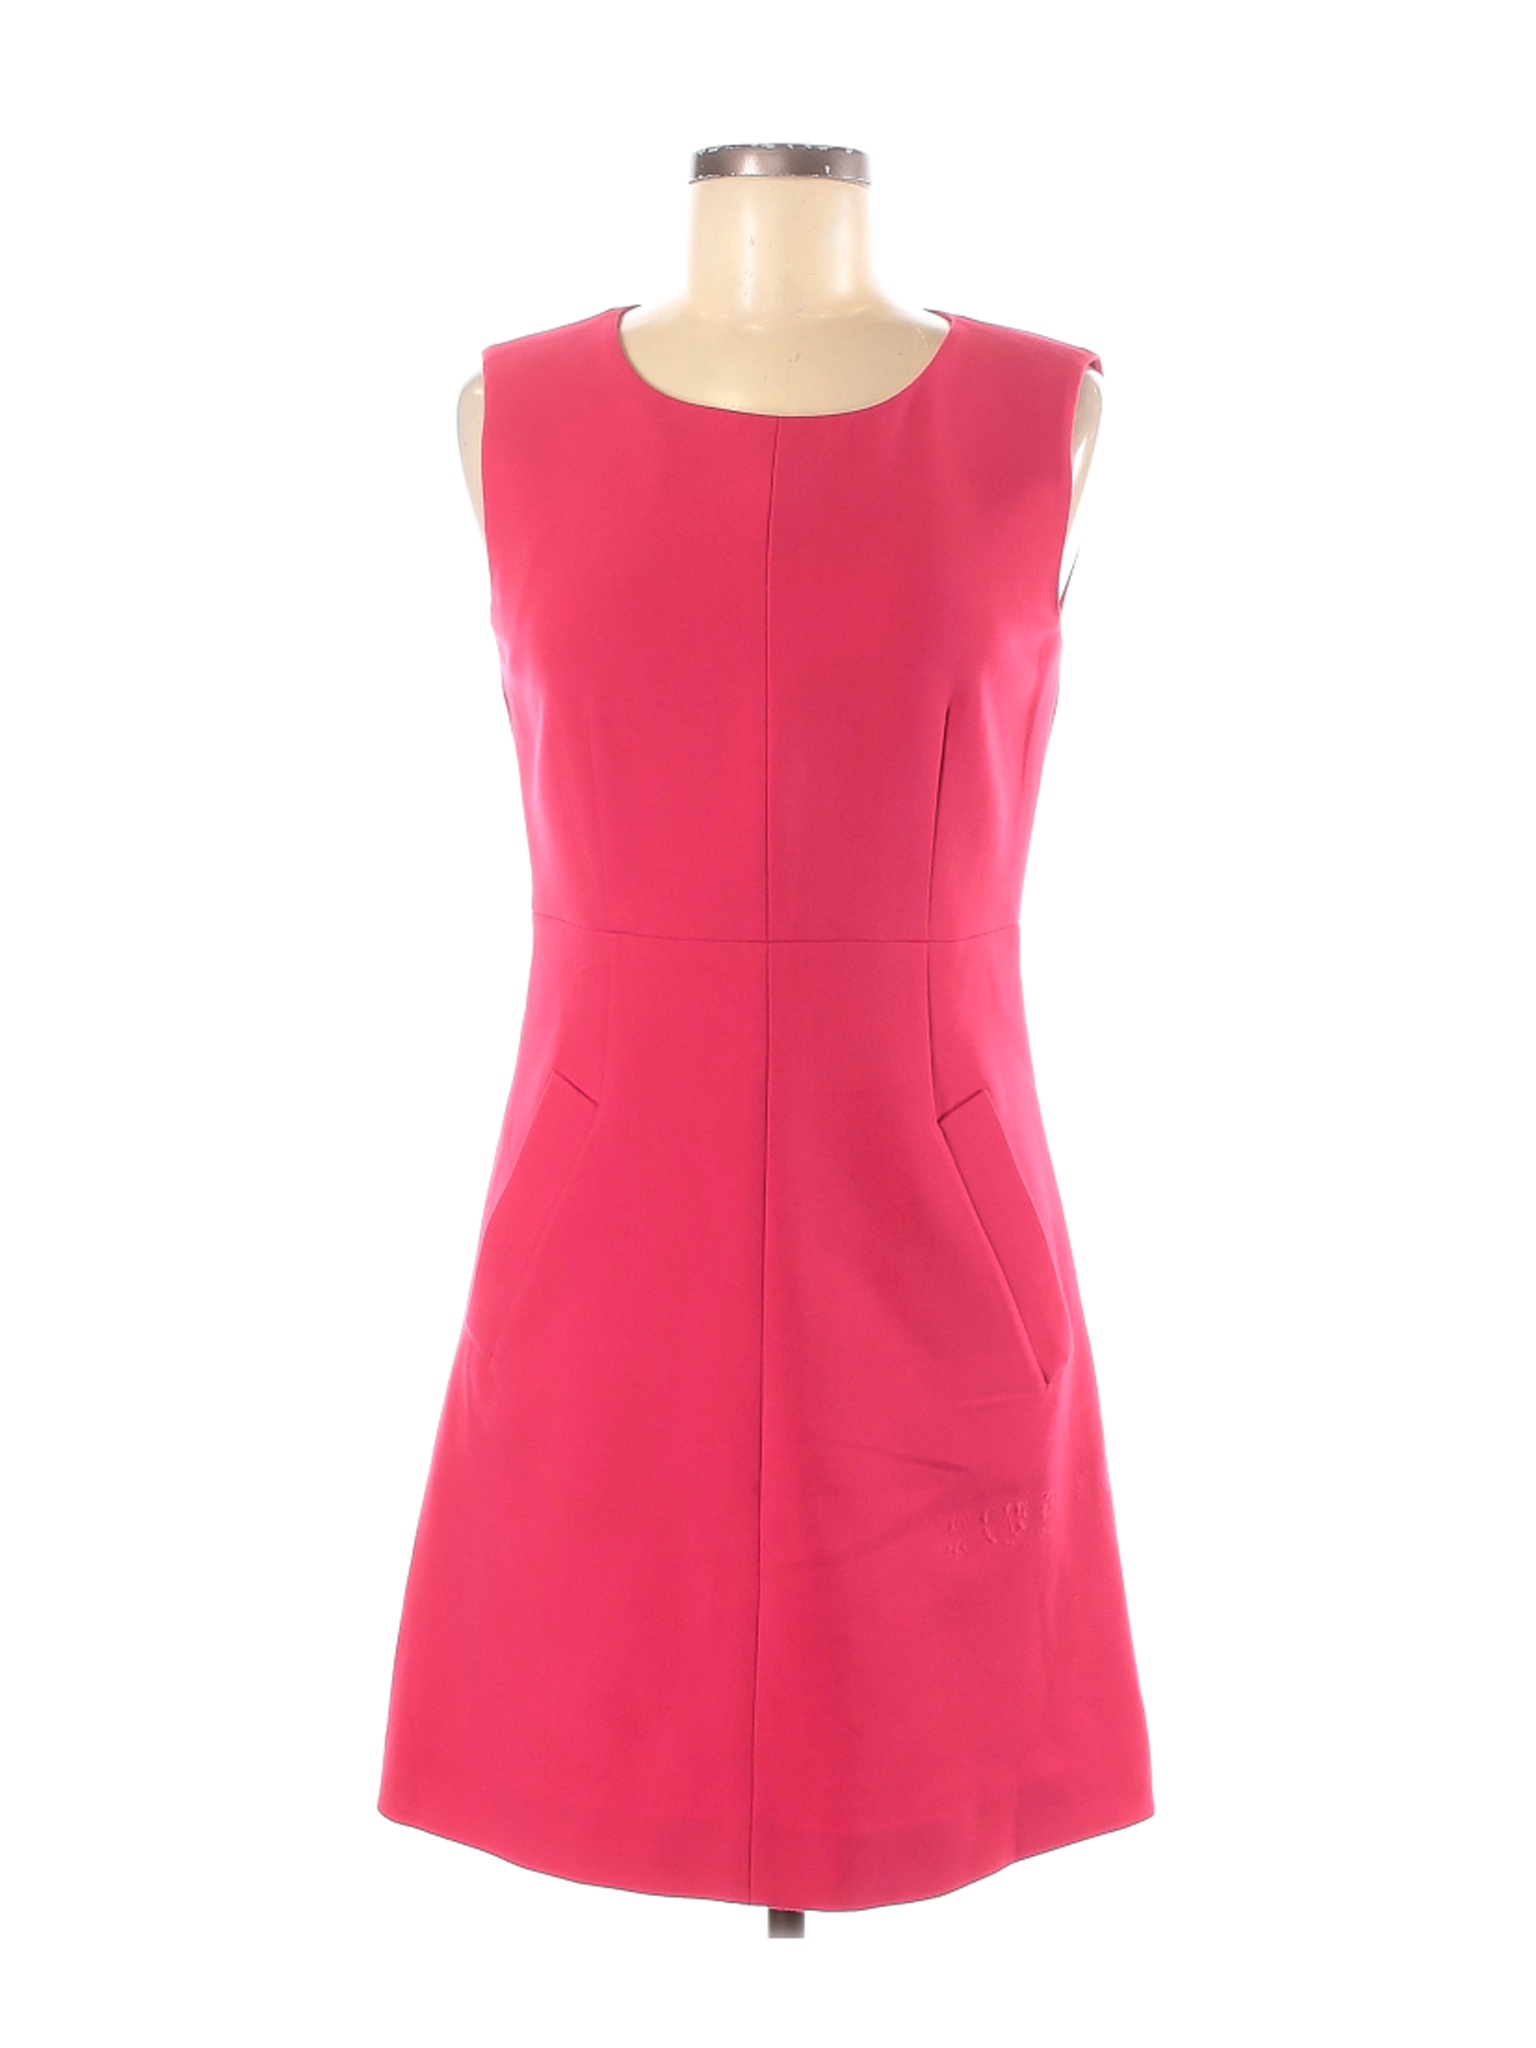 Diane von Furstenberg Women Pink Casual Dress 6 | eBay